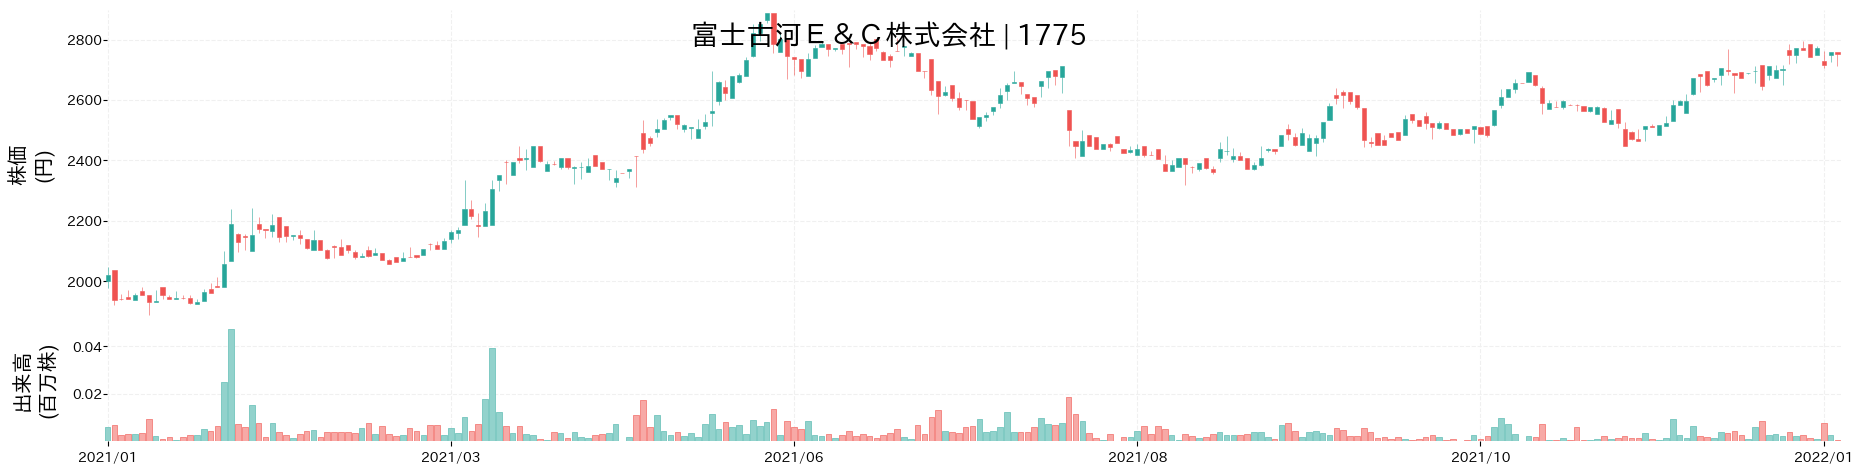 富士古河E&Cの株価推移(2021)